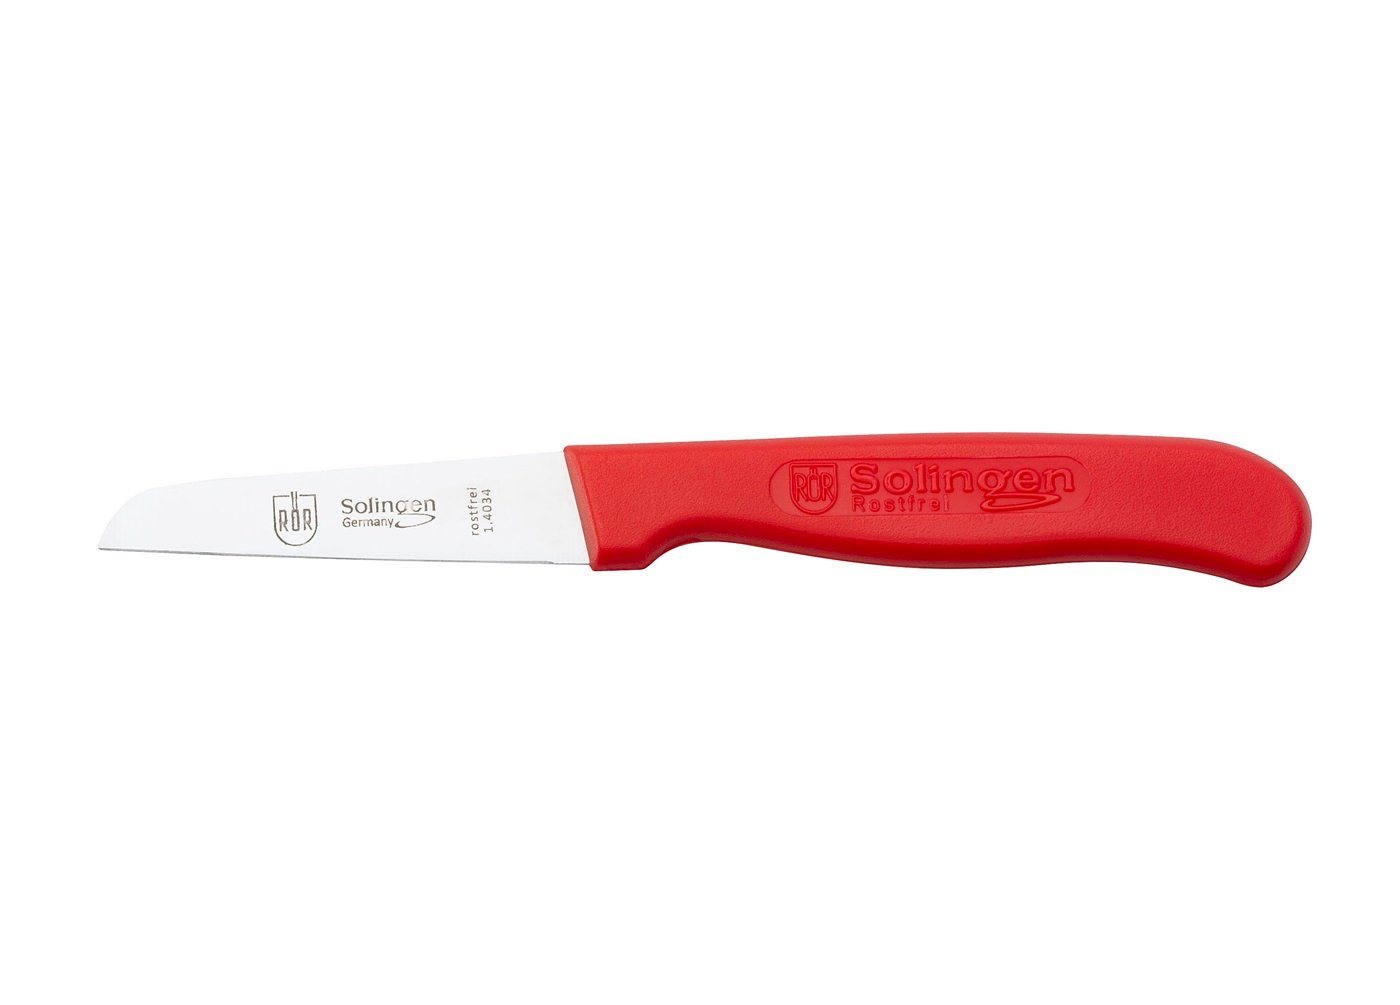 RÖR Kochmesser 10121, Küchenmesser mit Kunststoffgriff in rot - 16 cm -, zum Schneiden von Obst und Gemüse - Made in Solingen von RÖR